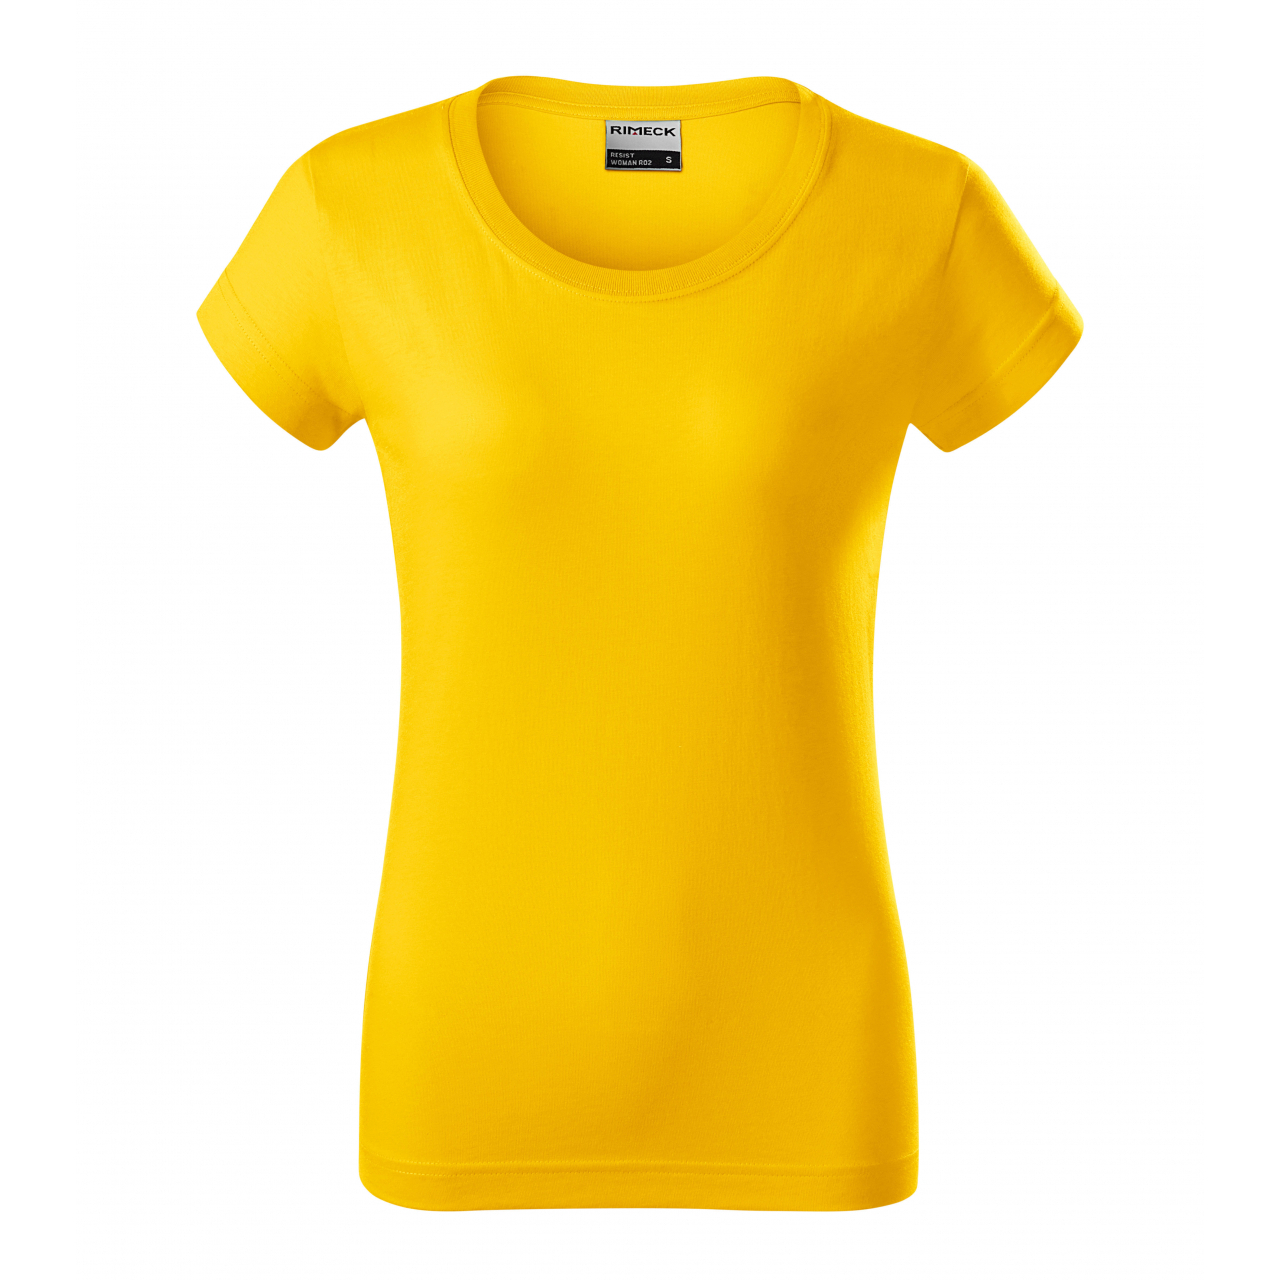 Tričko dámské Rimeck Resist - žluté, L